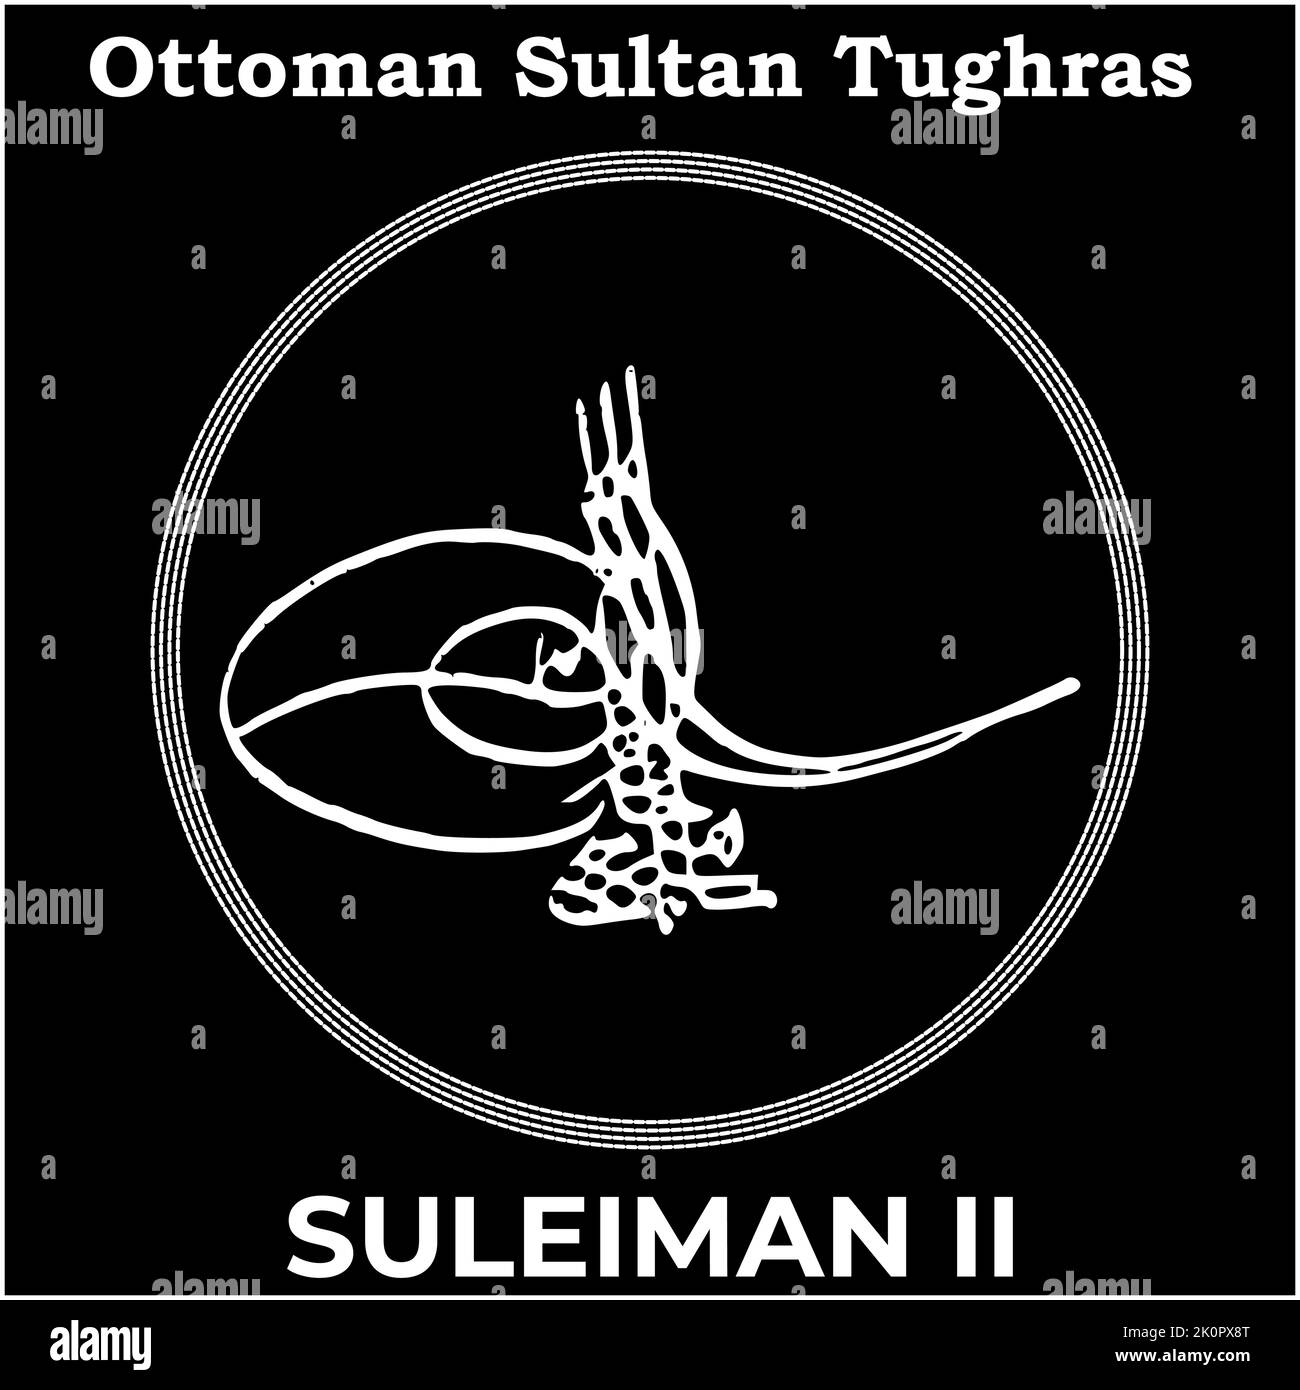 Vektorbild mit Tughra-Signatur des zwanzigsten osmanischen Sultans Suleiman II, Tughra von Suleiman II mit schwarzem Hintergrund. Stock Vektor